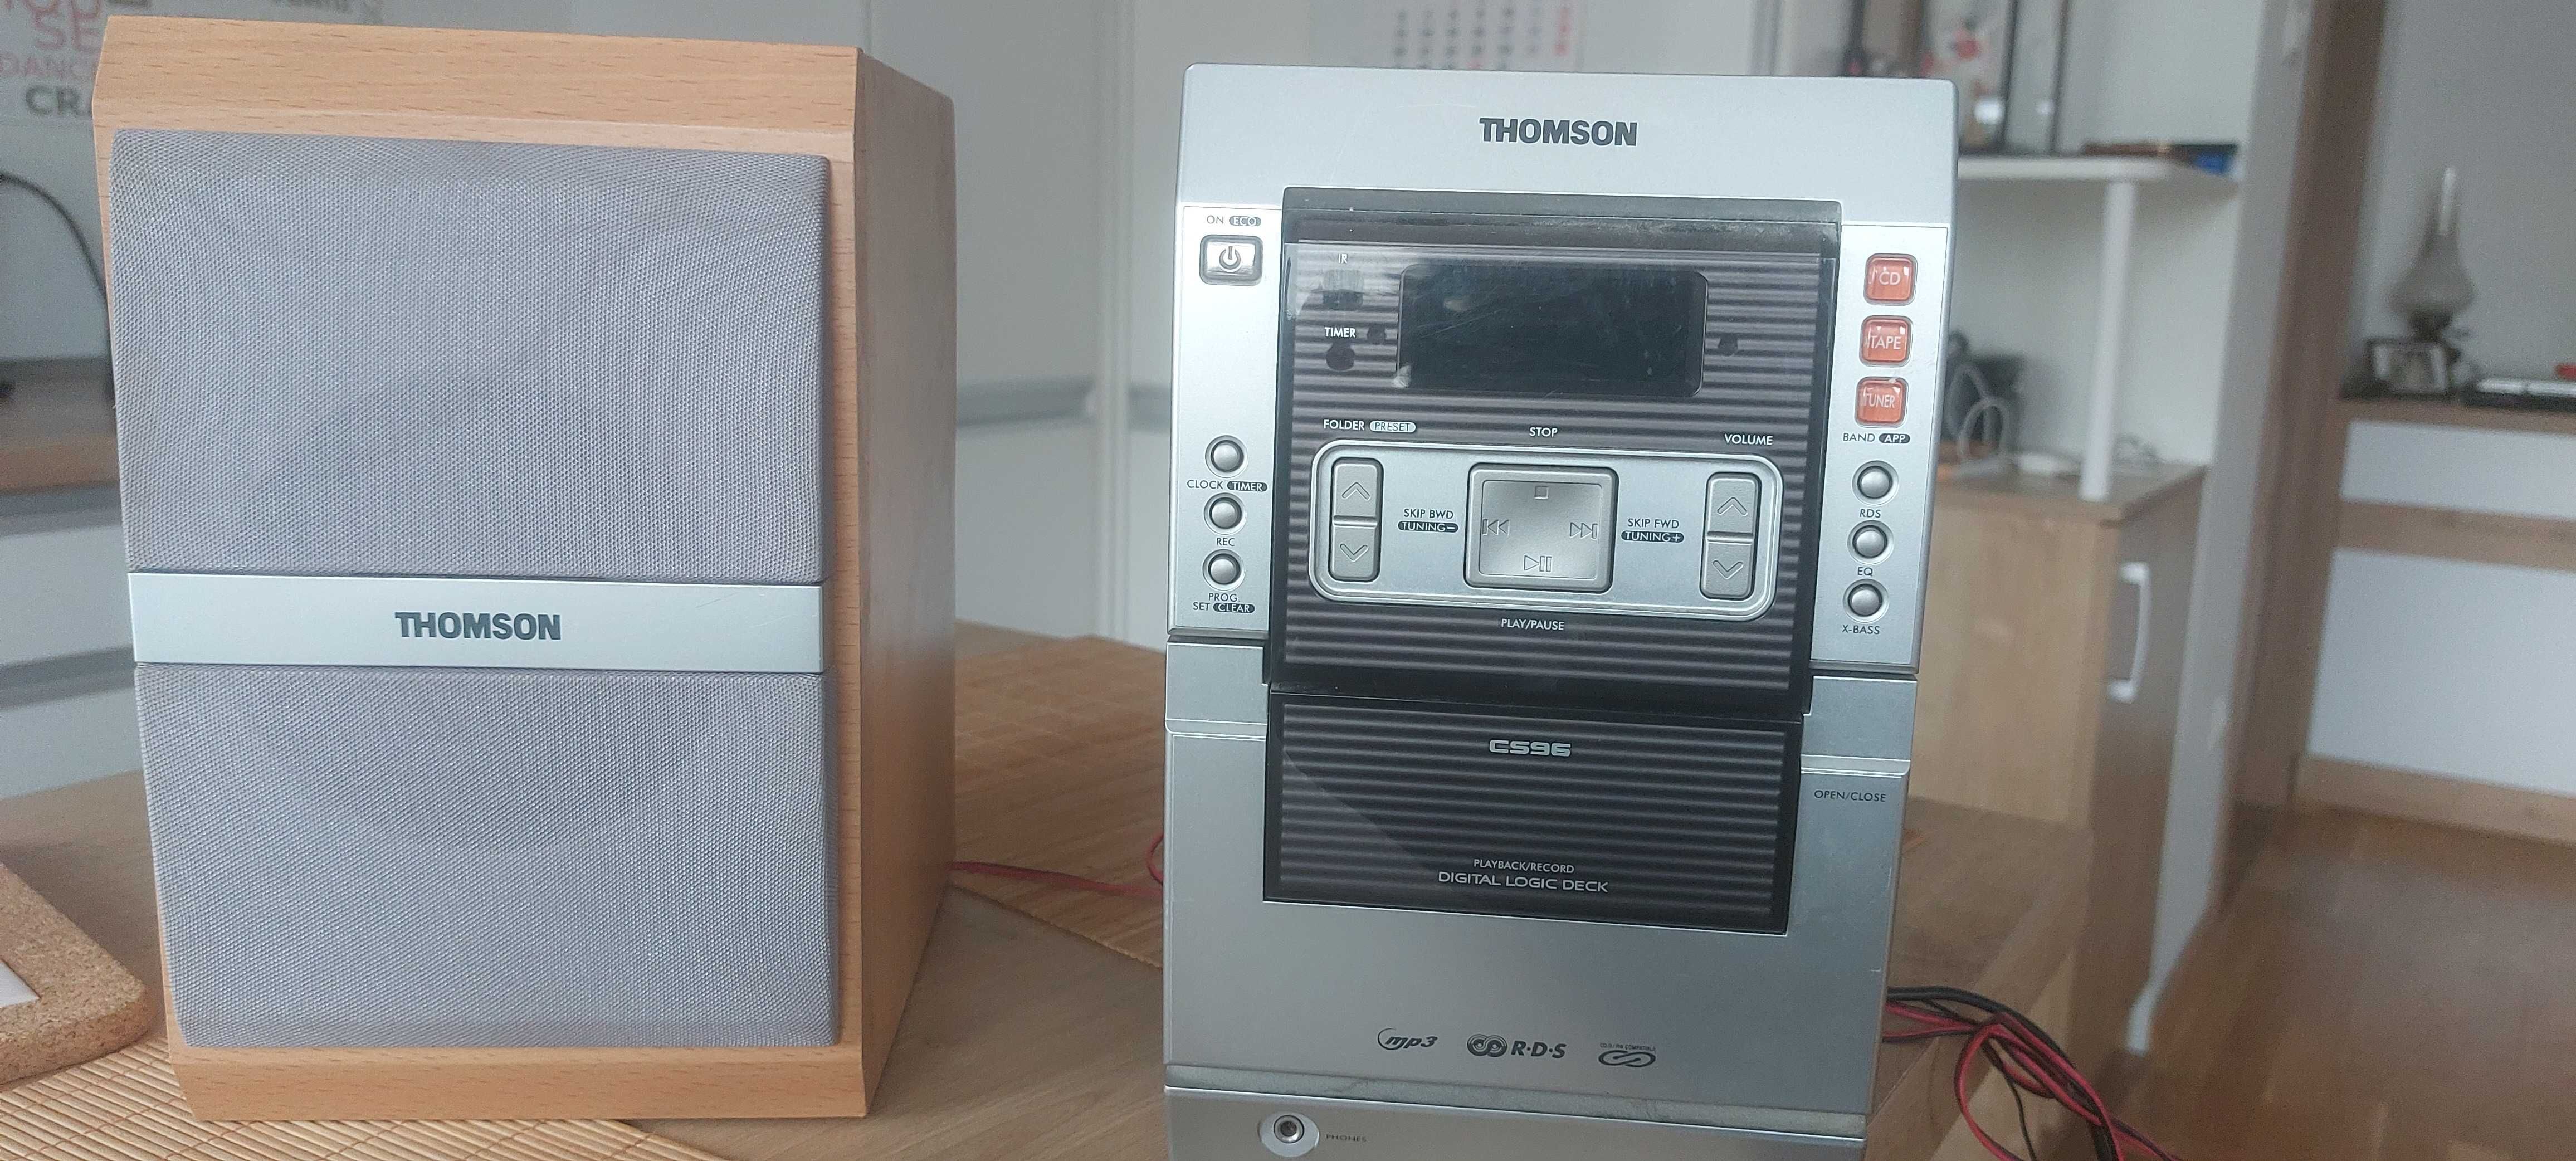 Wieża Thomson mp3, na kasety. Odbiera też radio, 4 Ohm, 20W